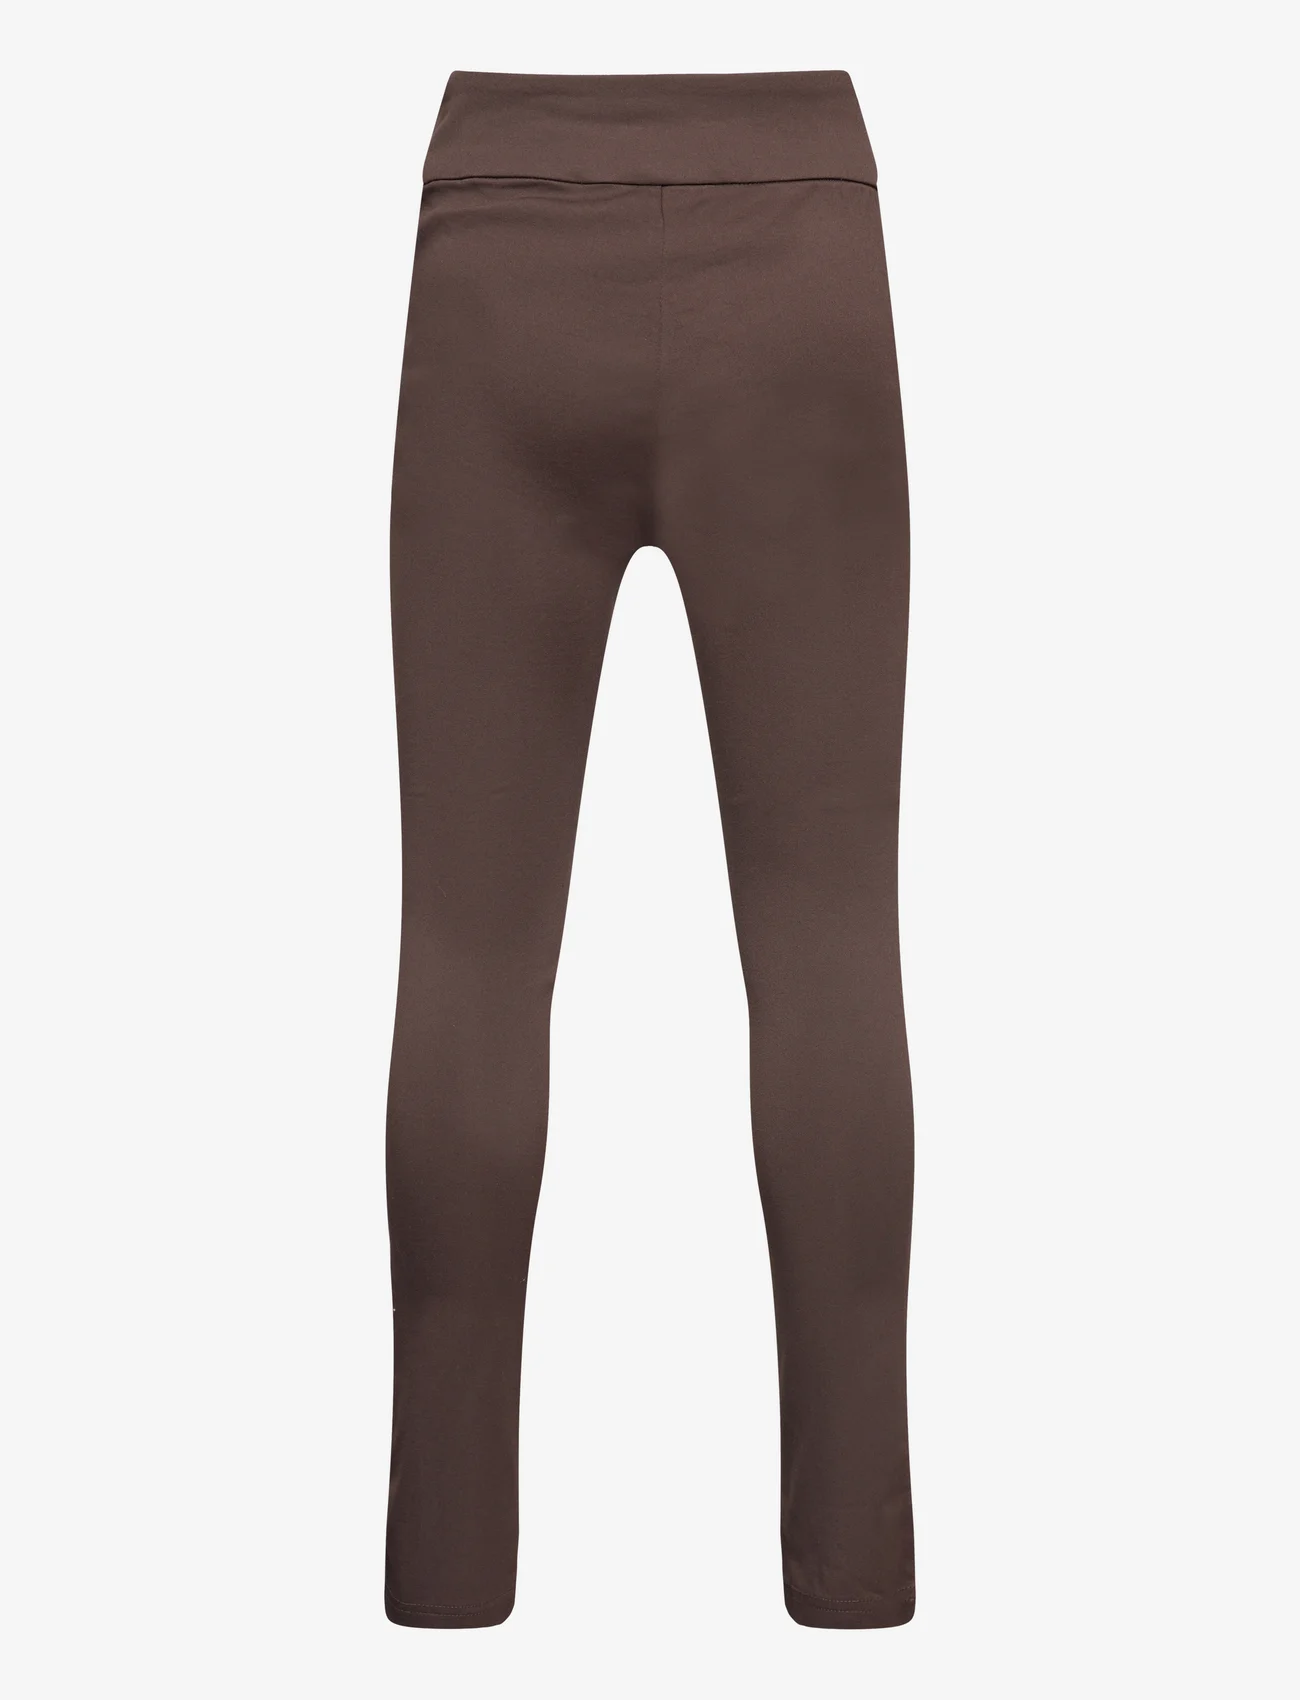 Rosemunde Kids - Trousers - leggings - black brown - 1